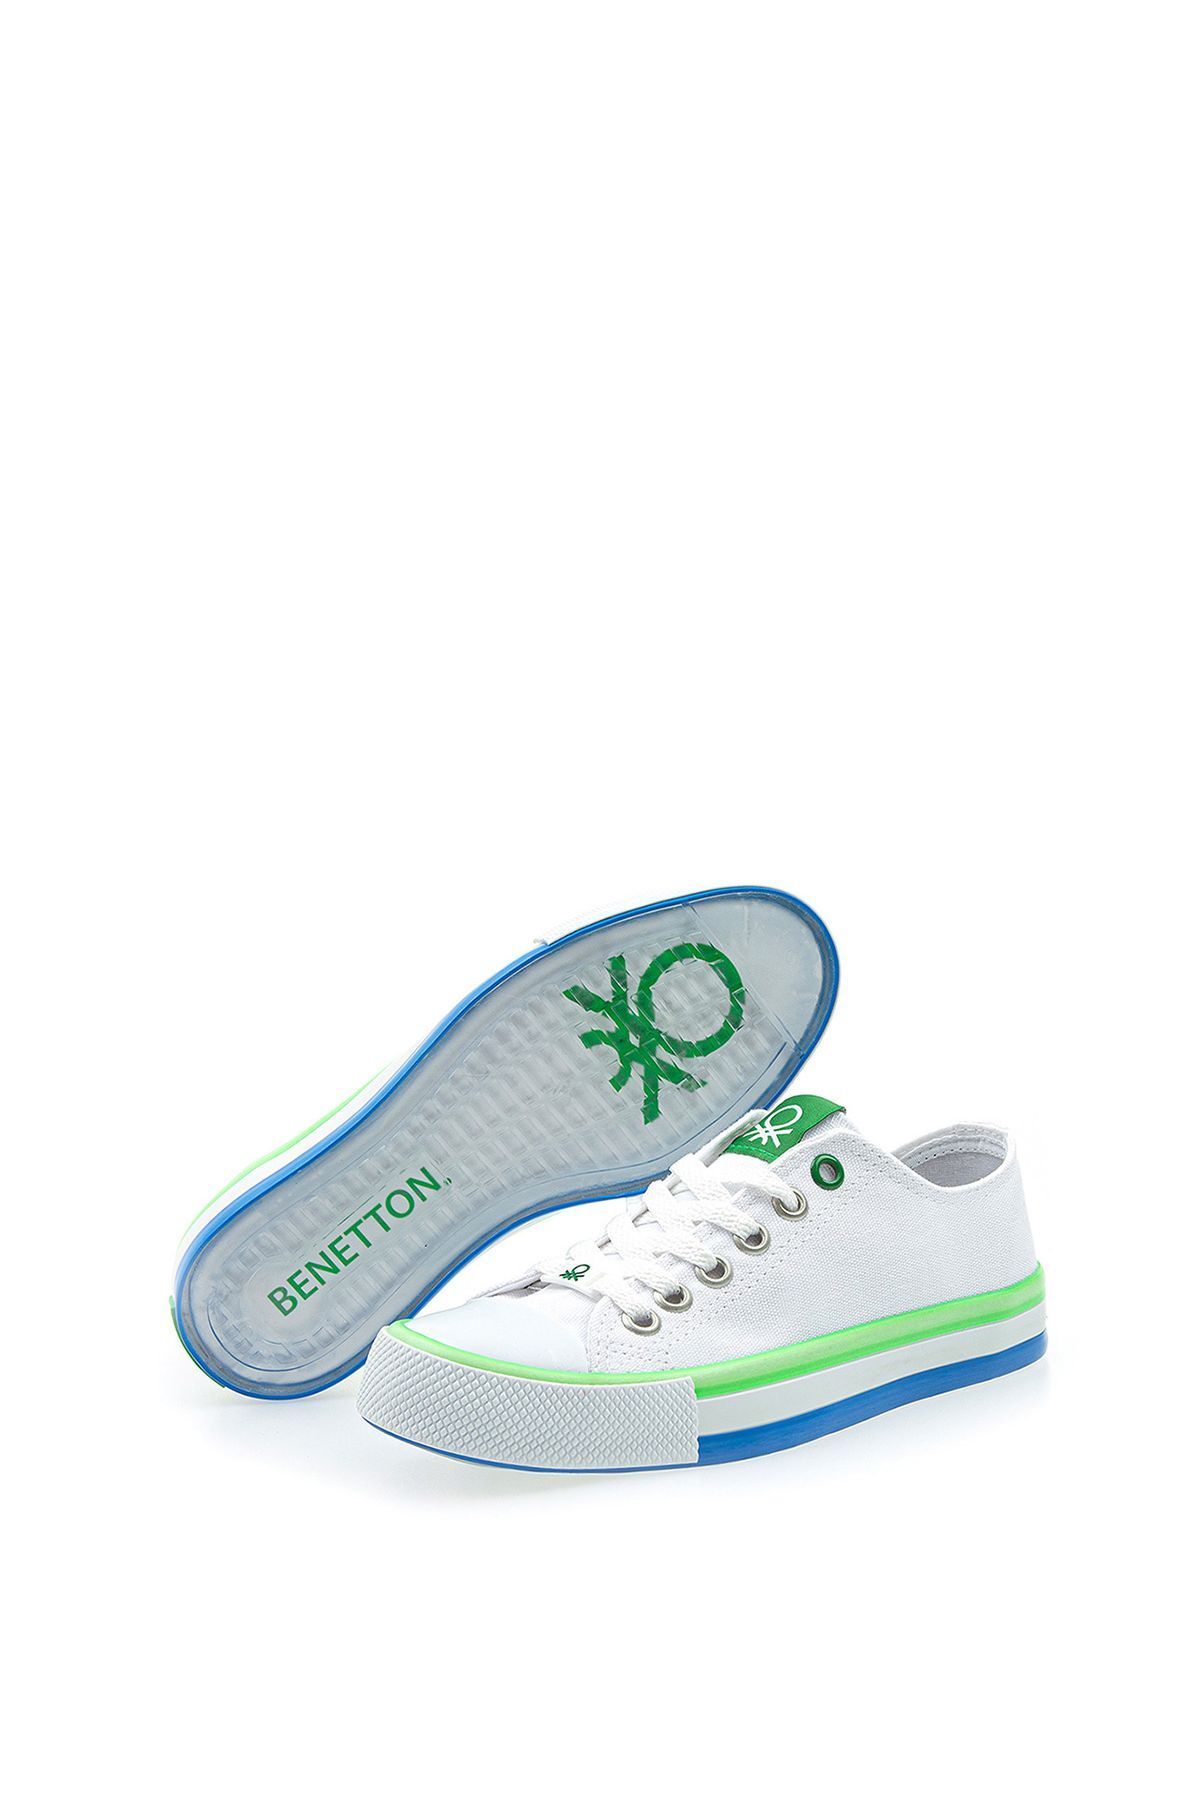 United Colors of Benetton Unisex Benetton Bağcıklı Unisex Çocuk Sneakers BN-30175